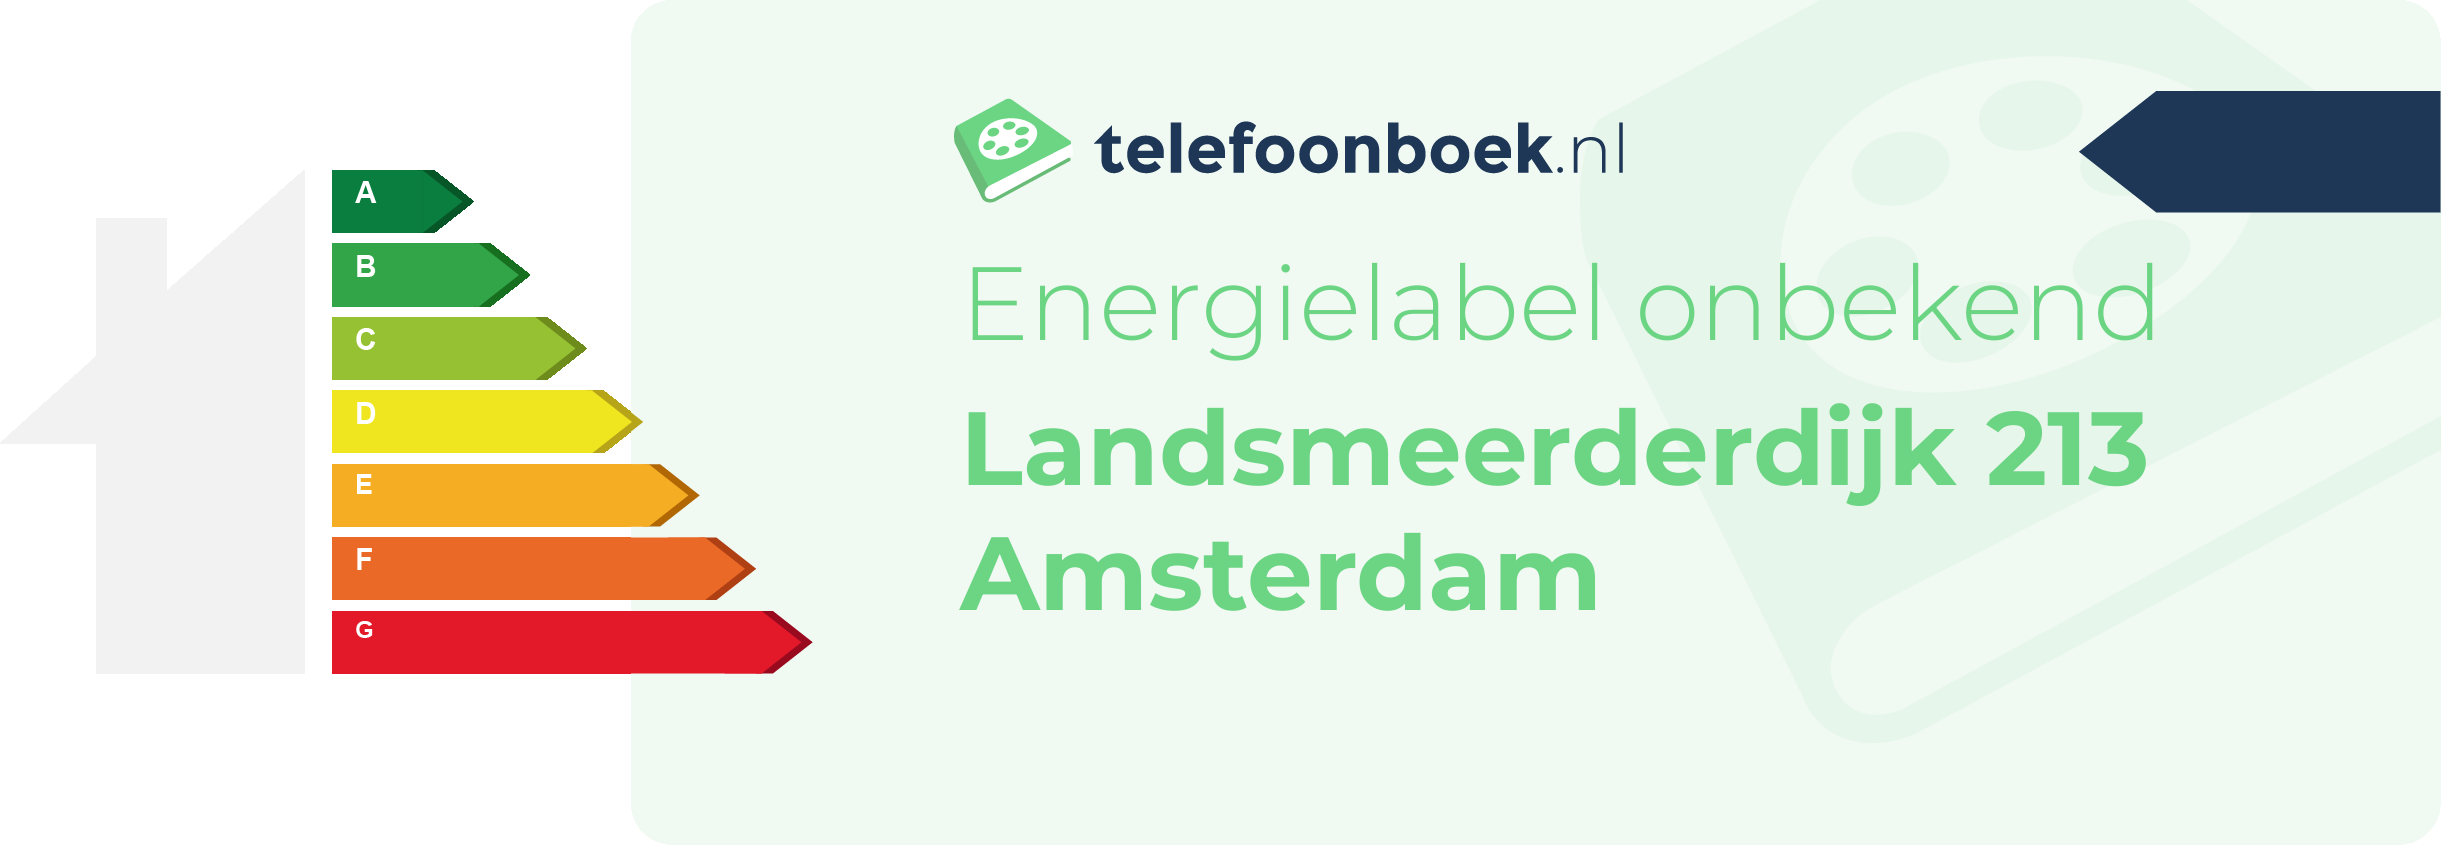 Energielabel Landsmeerderdijk 213 Amsterdam